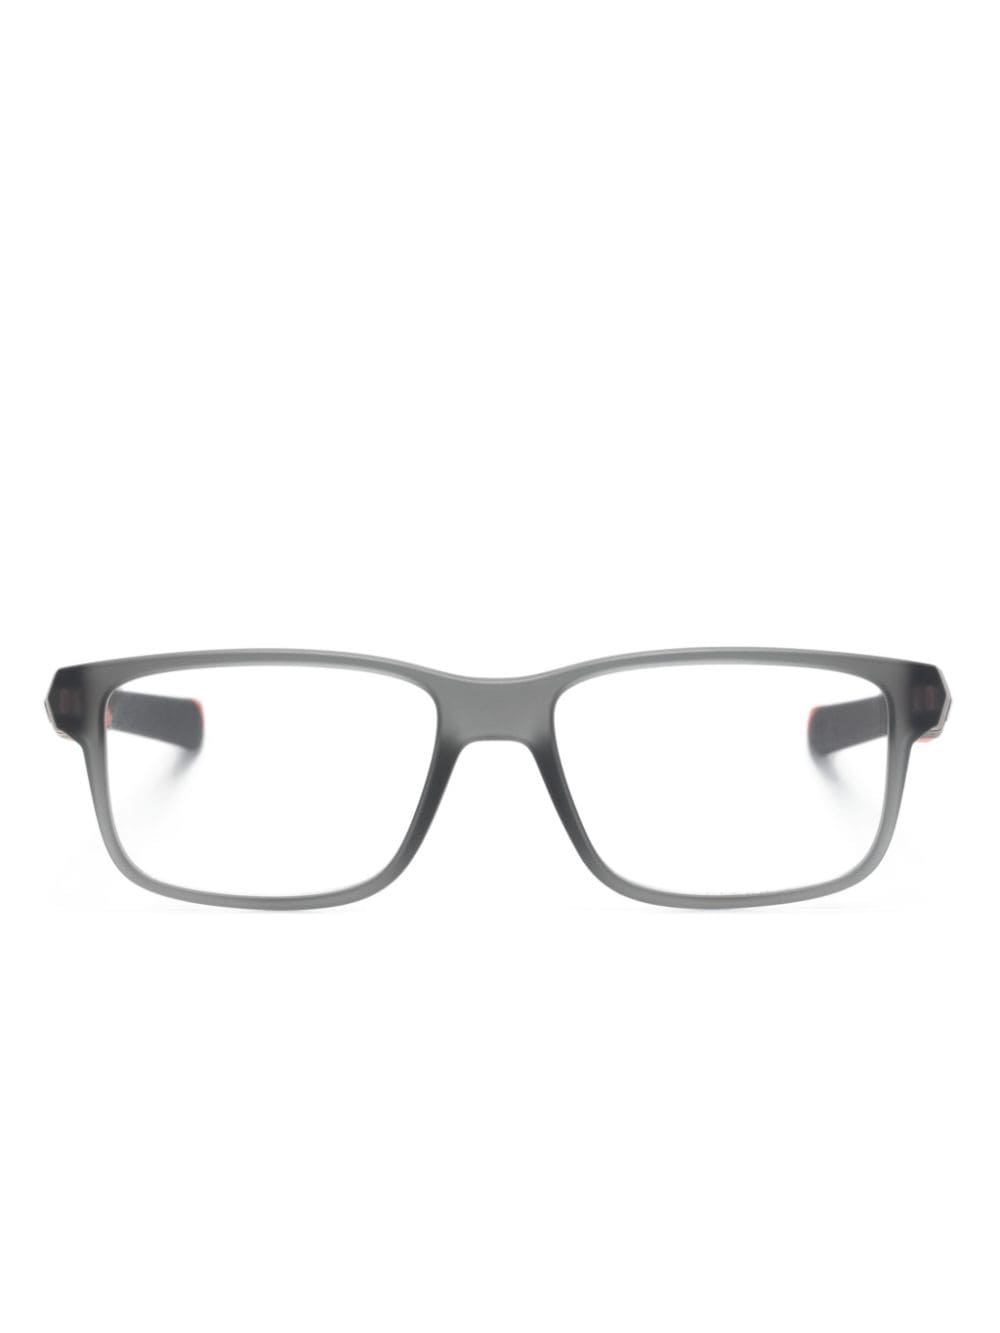 Oakley Field Day Brille mit eckigem Gestell - Grau von Oakley